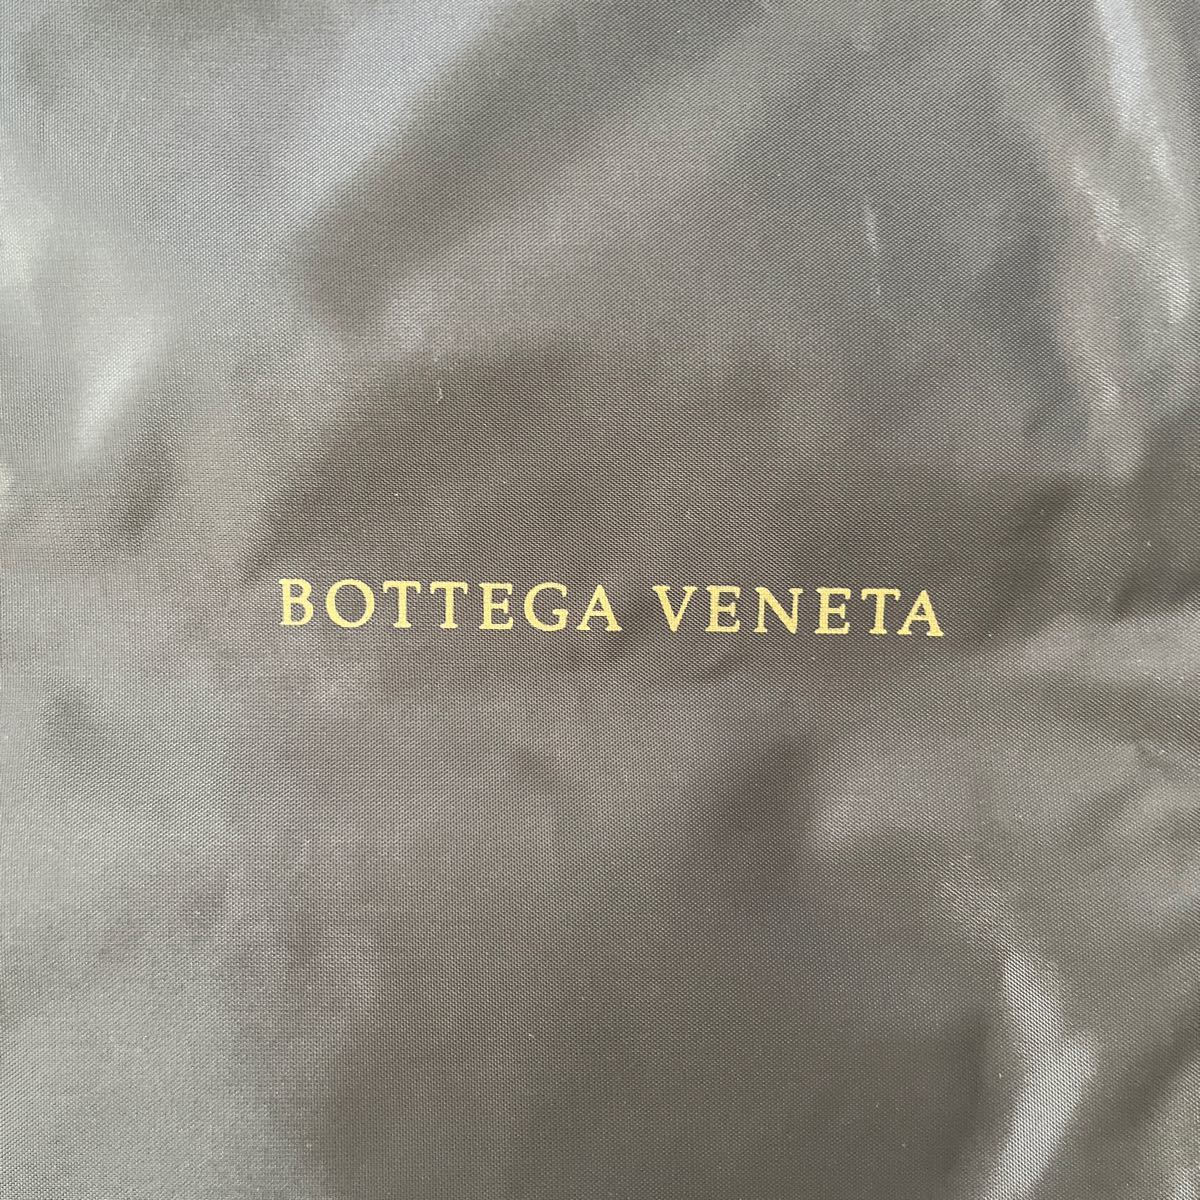 ボッテガヴェネタガーメントケース未使用品BOTTEGA VENETA!スーツやショートコート用